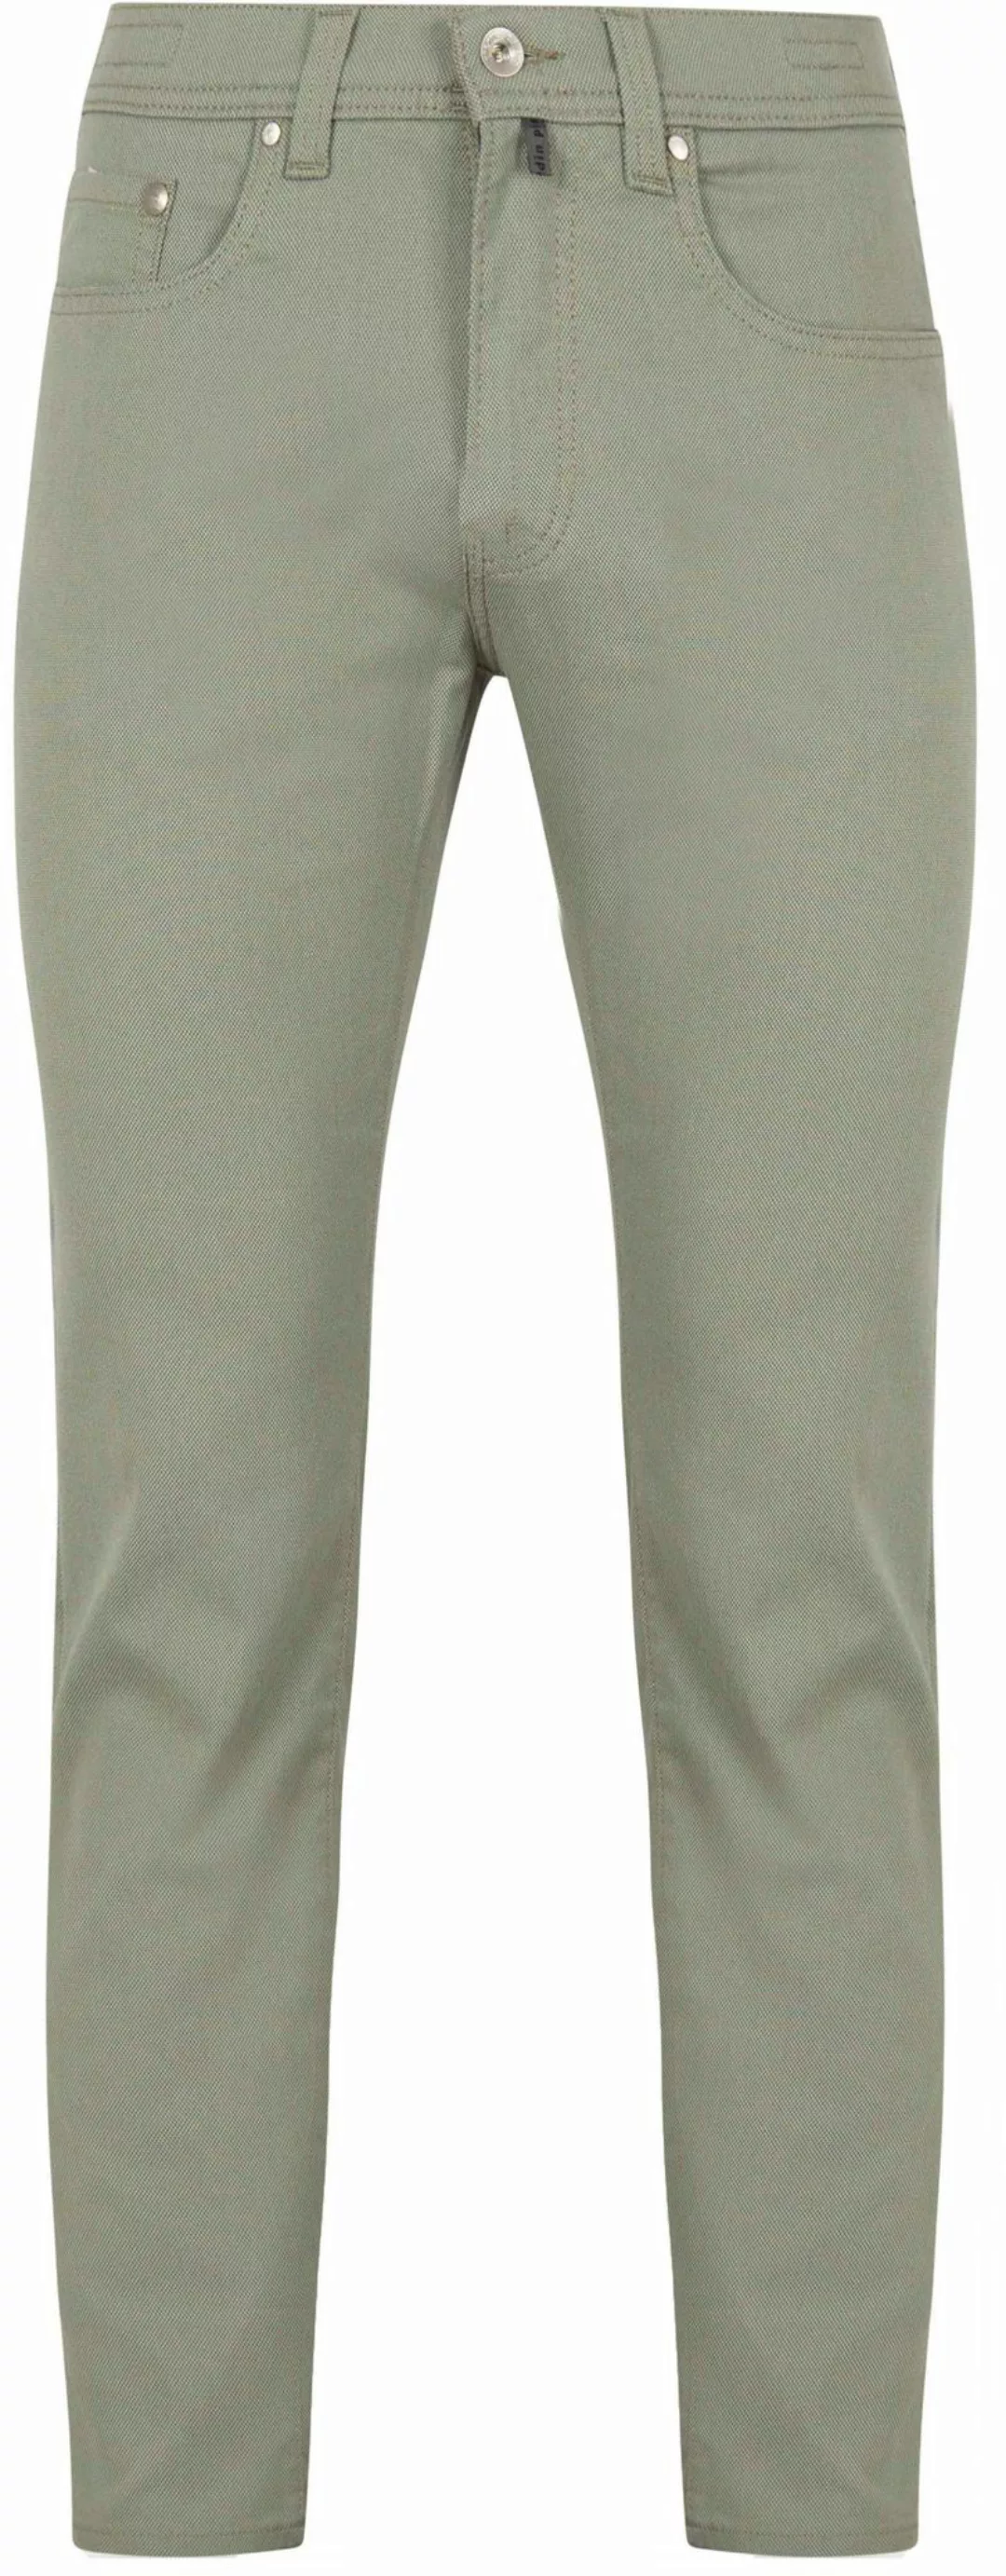 Pierre Cardin Trousers Lyon  Future Flex Grün - Größe W 31 - L 32 günstig online kaufen